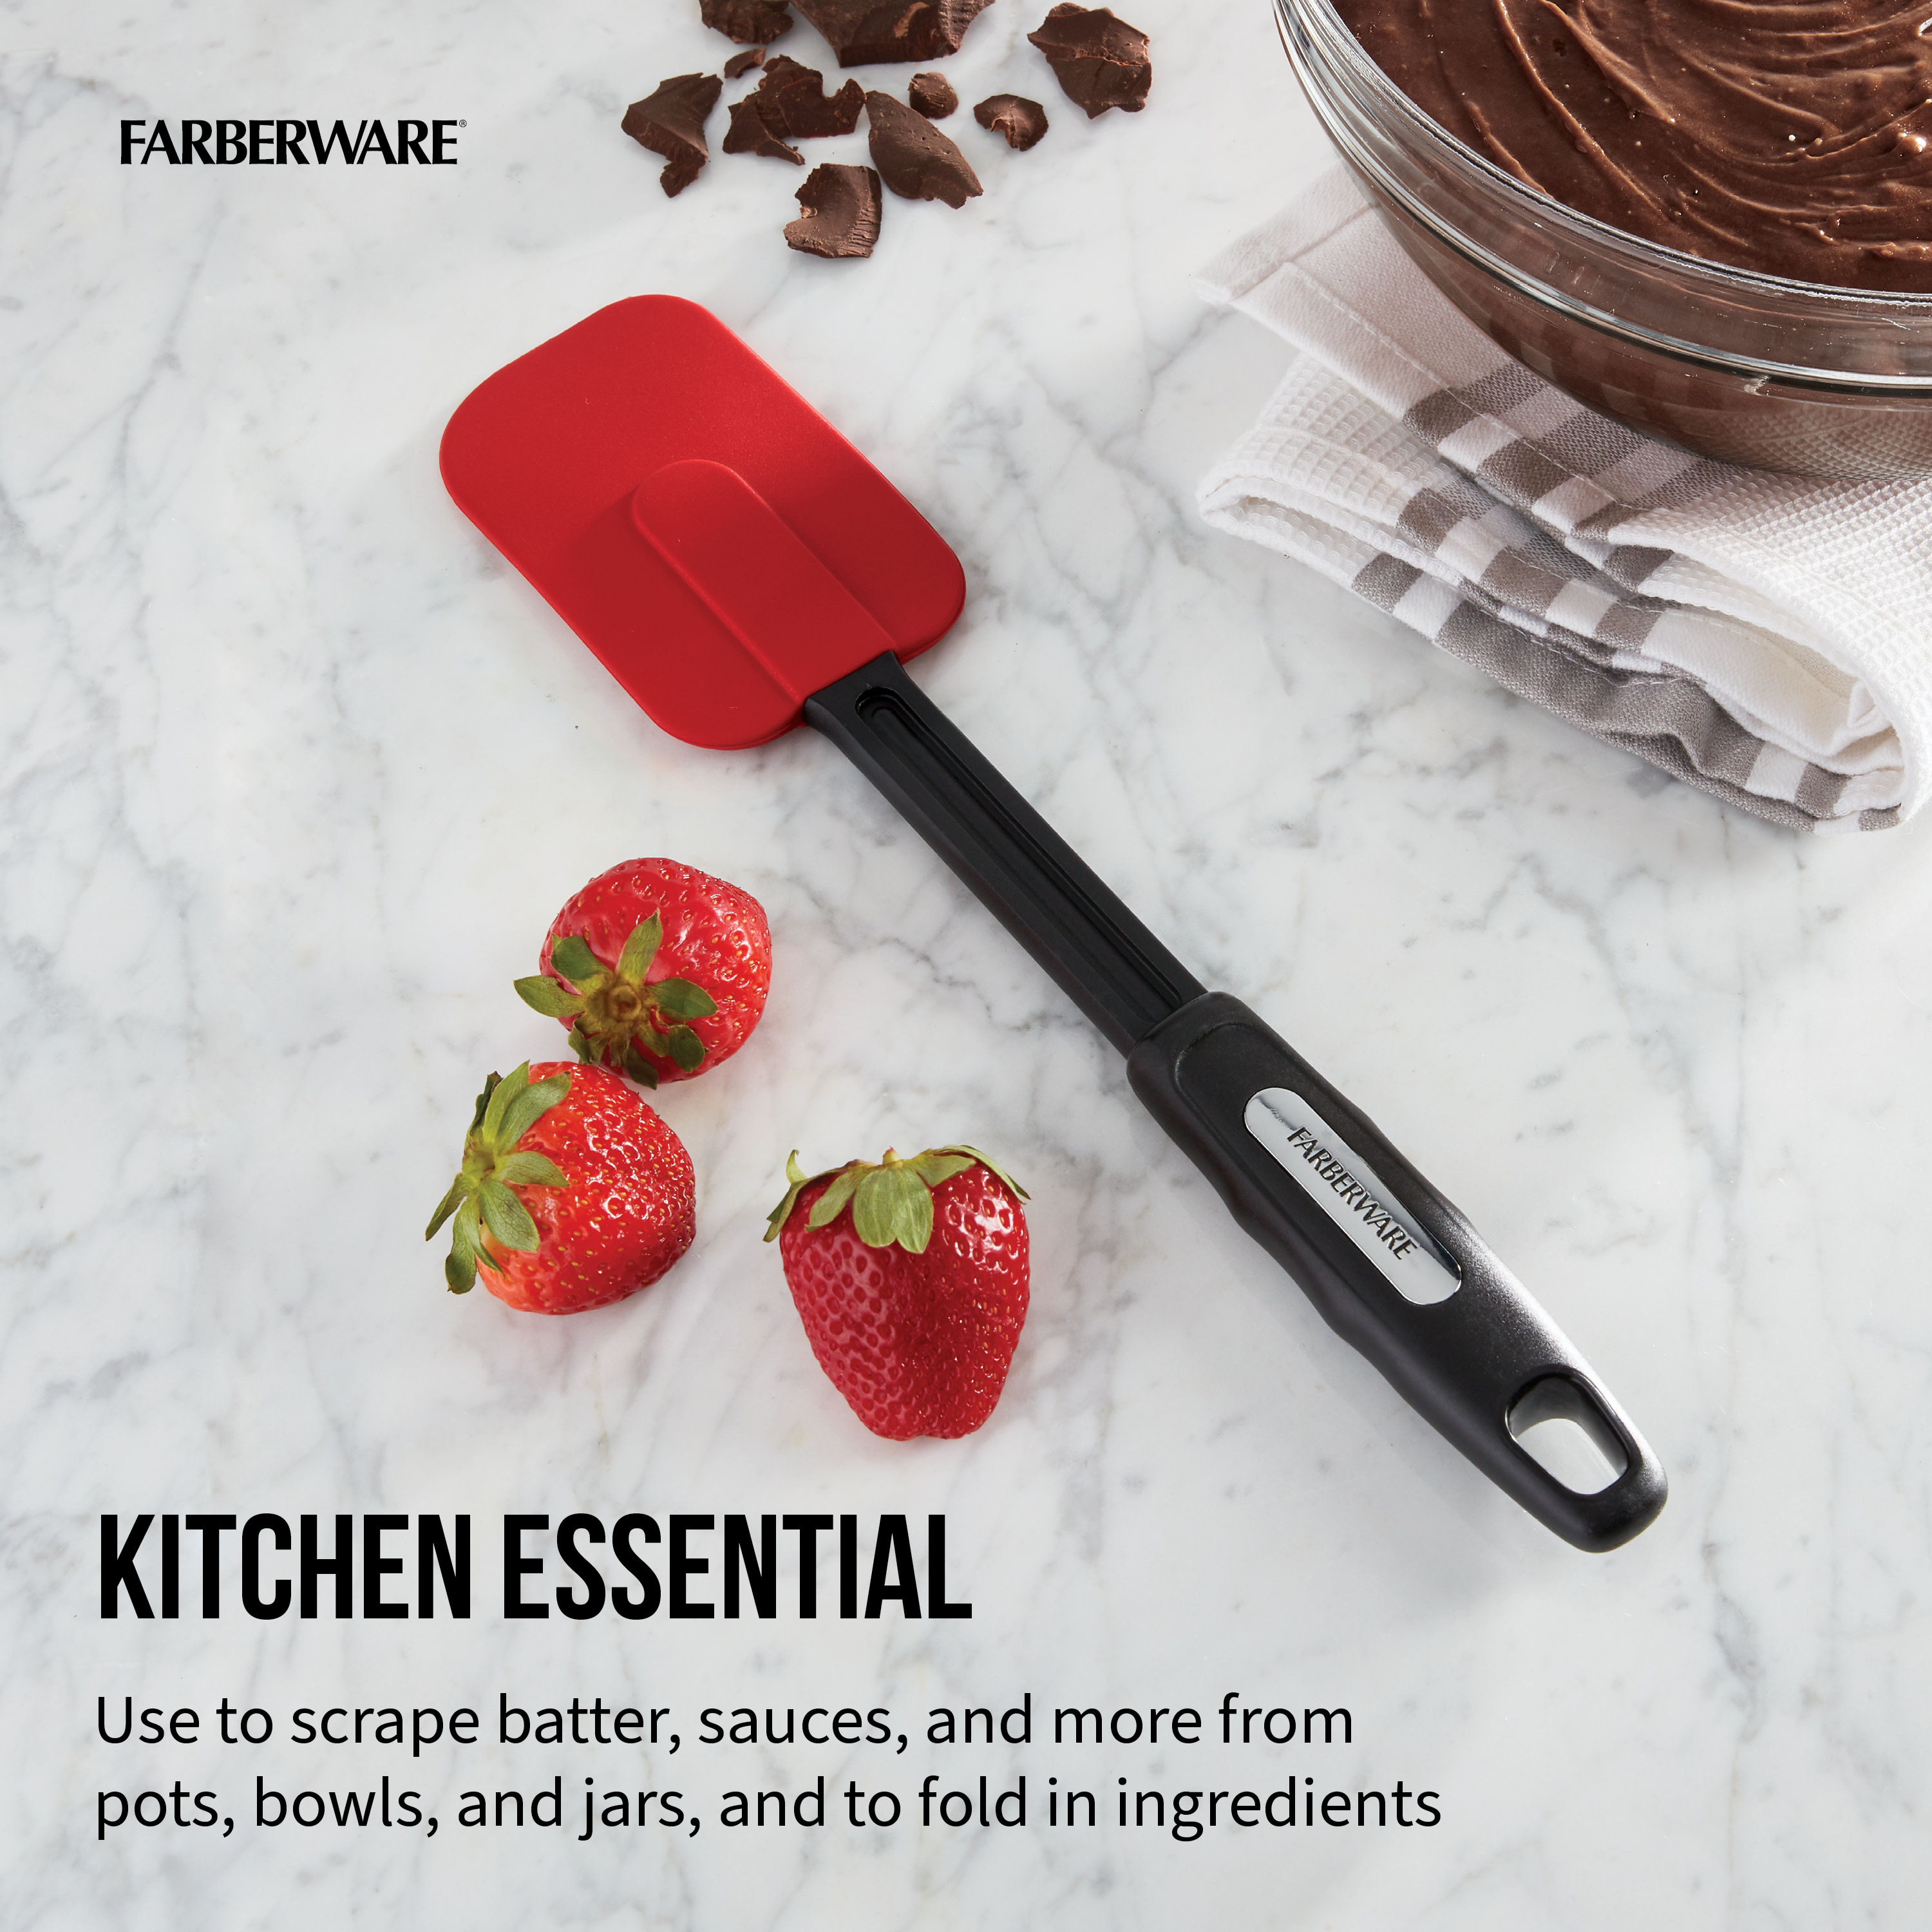 Farberware Kitchen Silicone Scraper/Spatula, 1-piece, Red - image 5 of 9